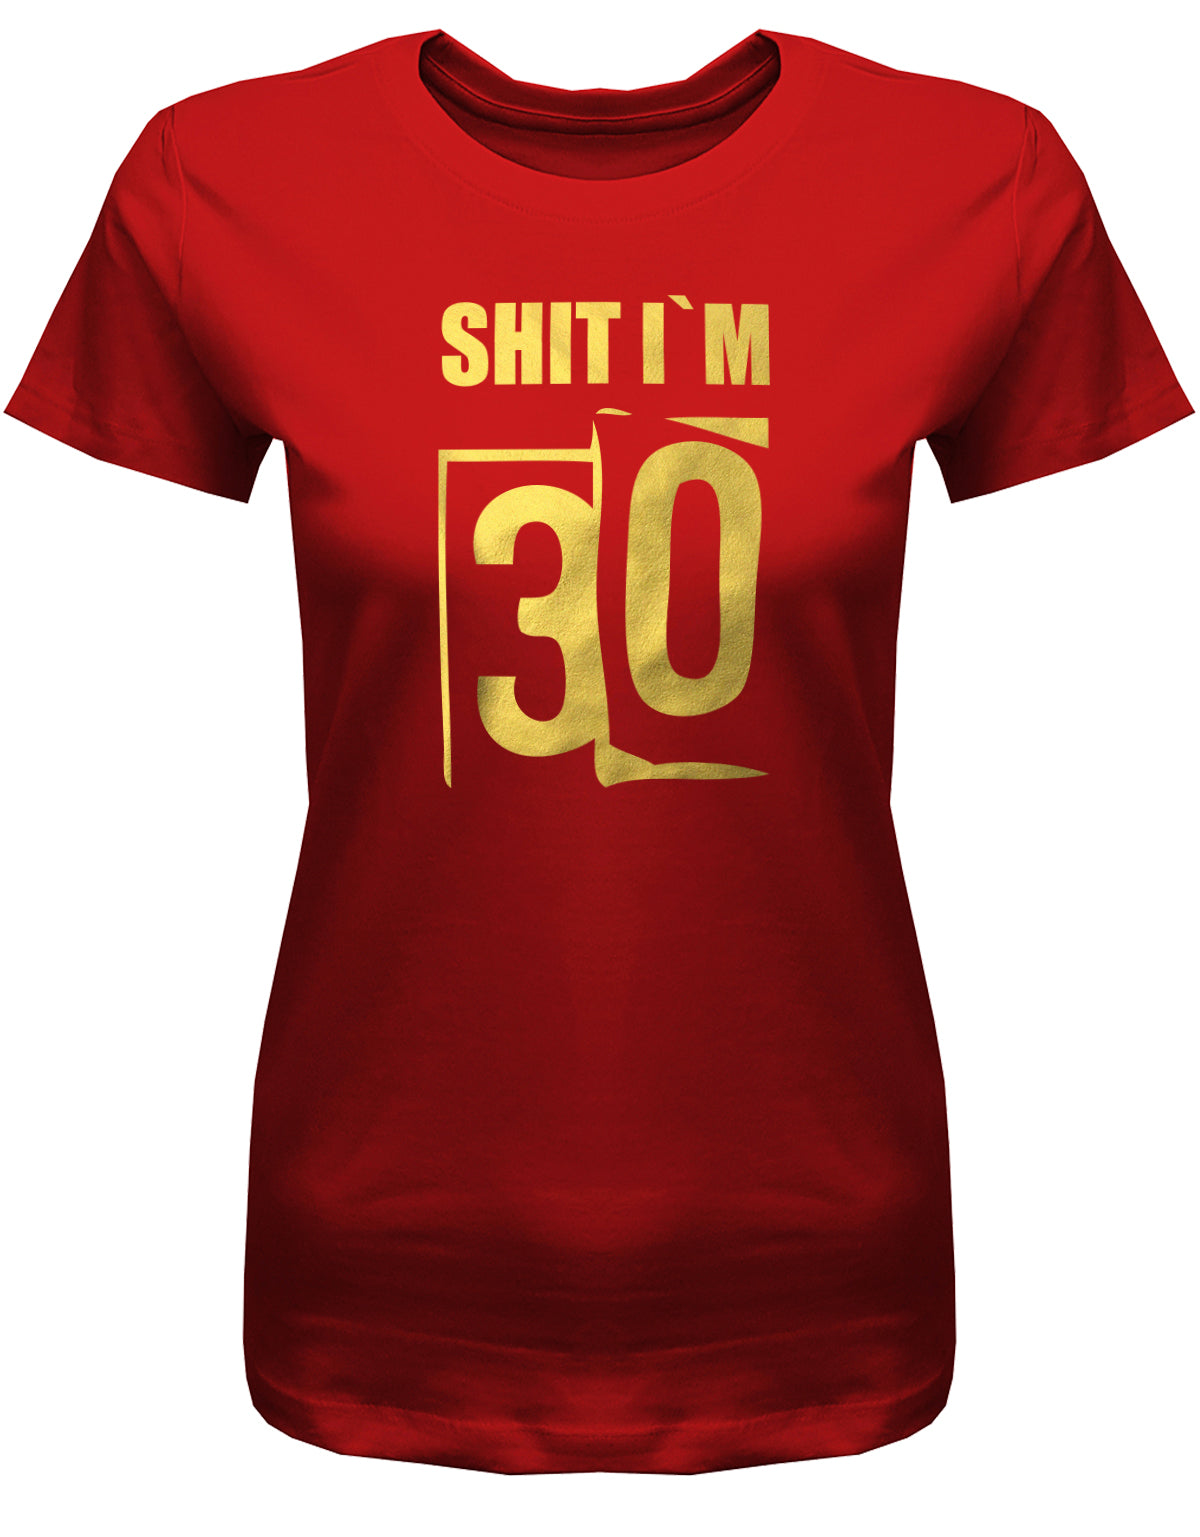 Lustiges T-Shirt zum 30. Geburtstag für die Frau Bedruckt mit: Shit i´m 30. Scheisse ich bin 30. Geschenk zum 30 geburtstag Frau ✓ 1993 geburtstag Frau ✓ 30 Geburtstag tshirt ✓ shirt geburtstag 30 Rot